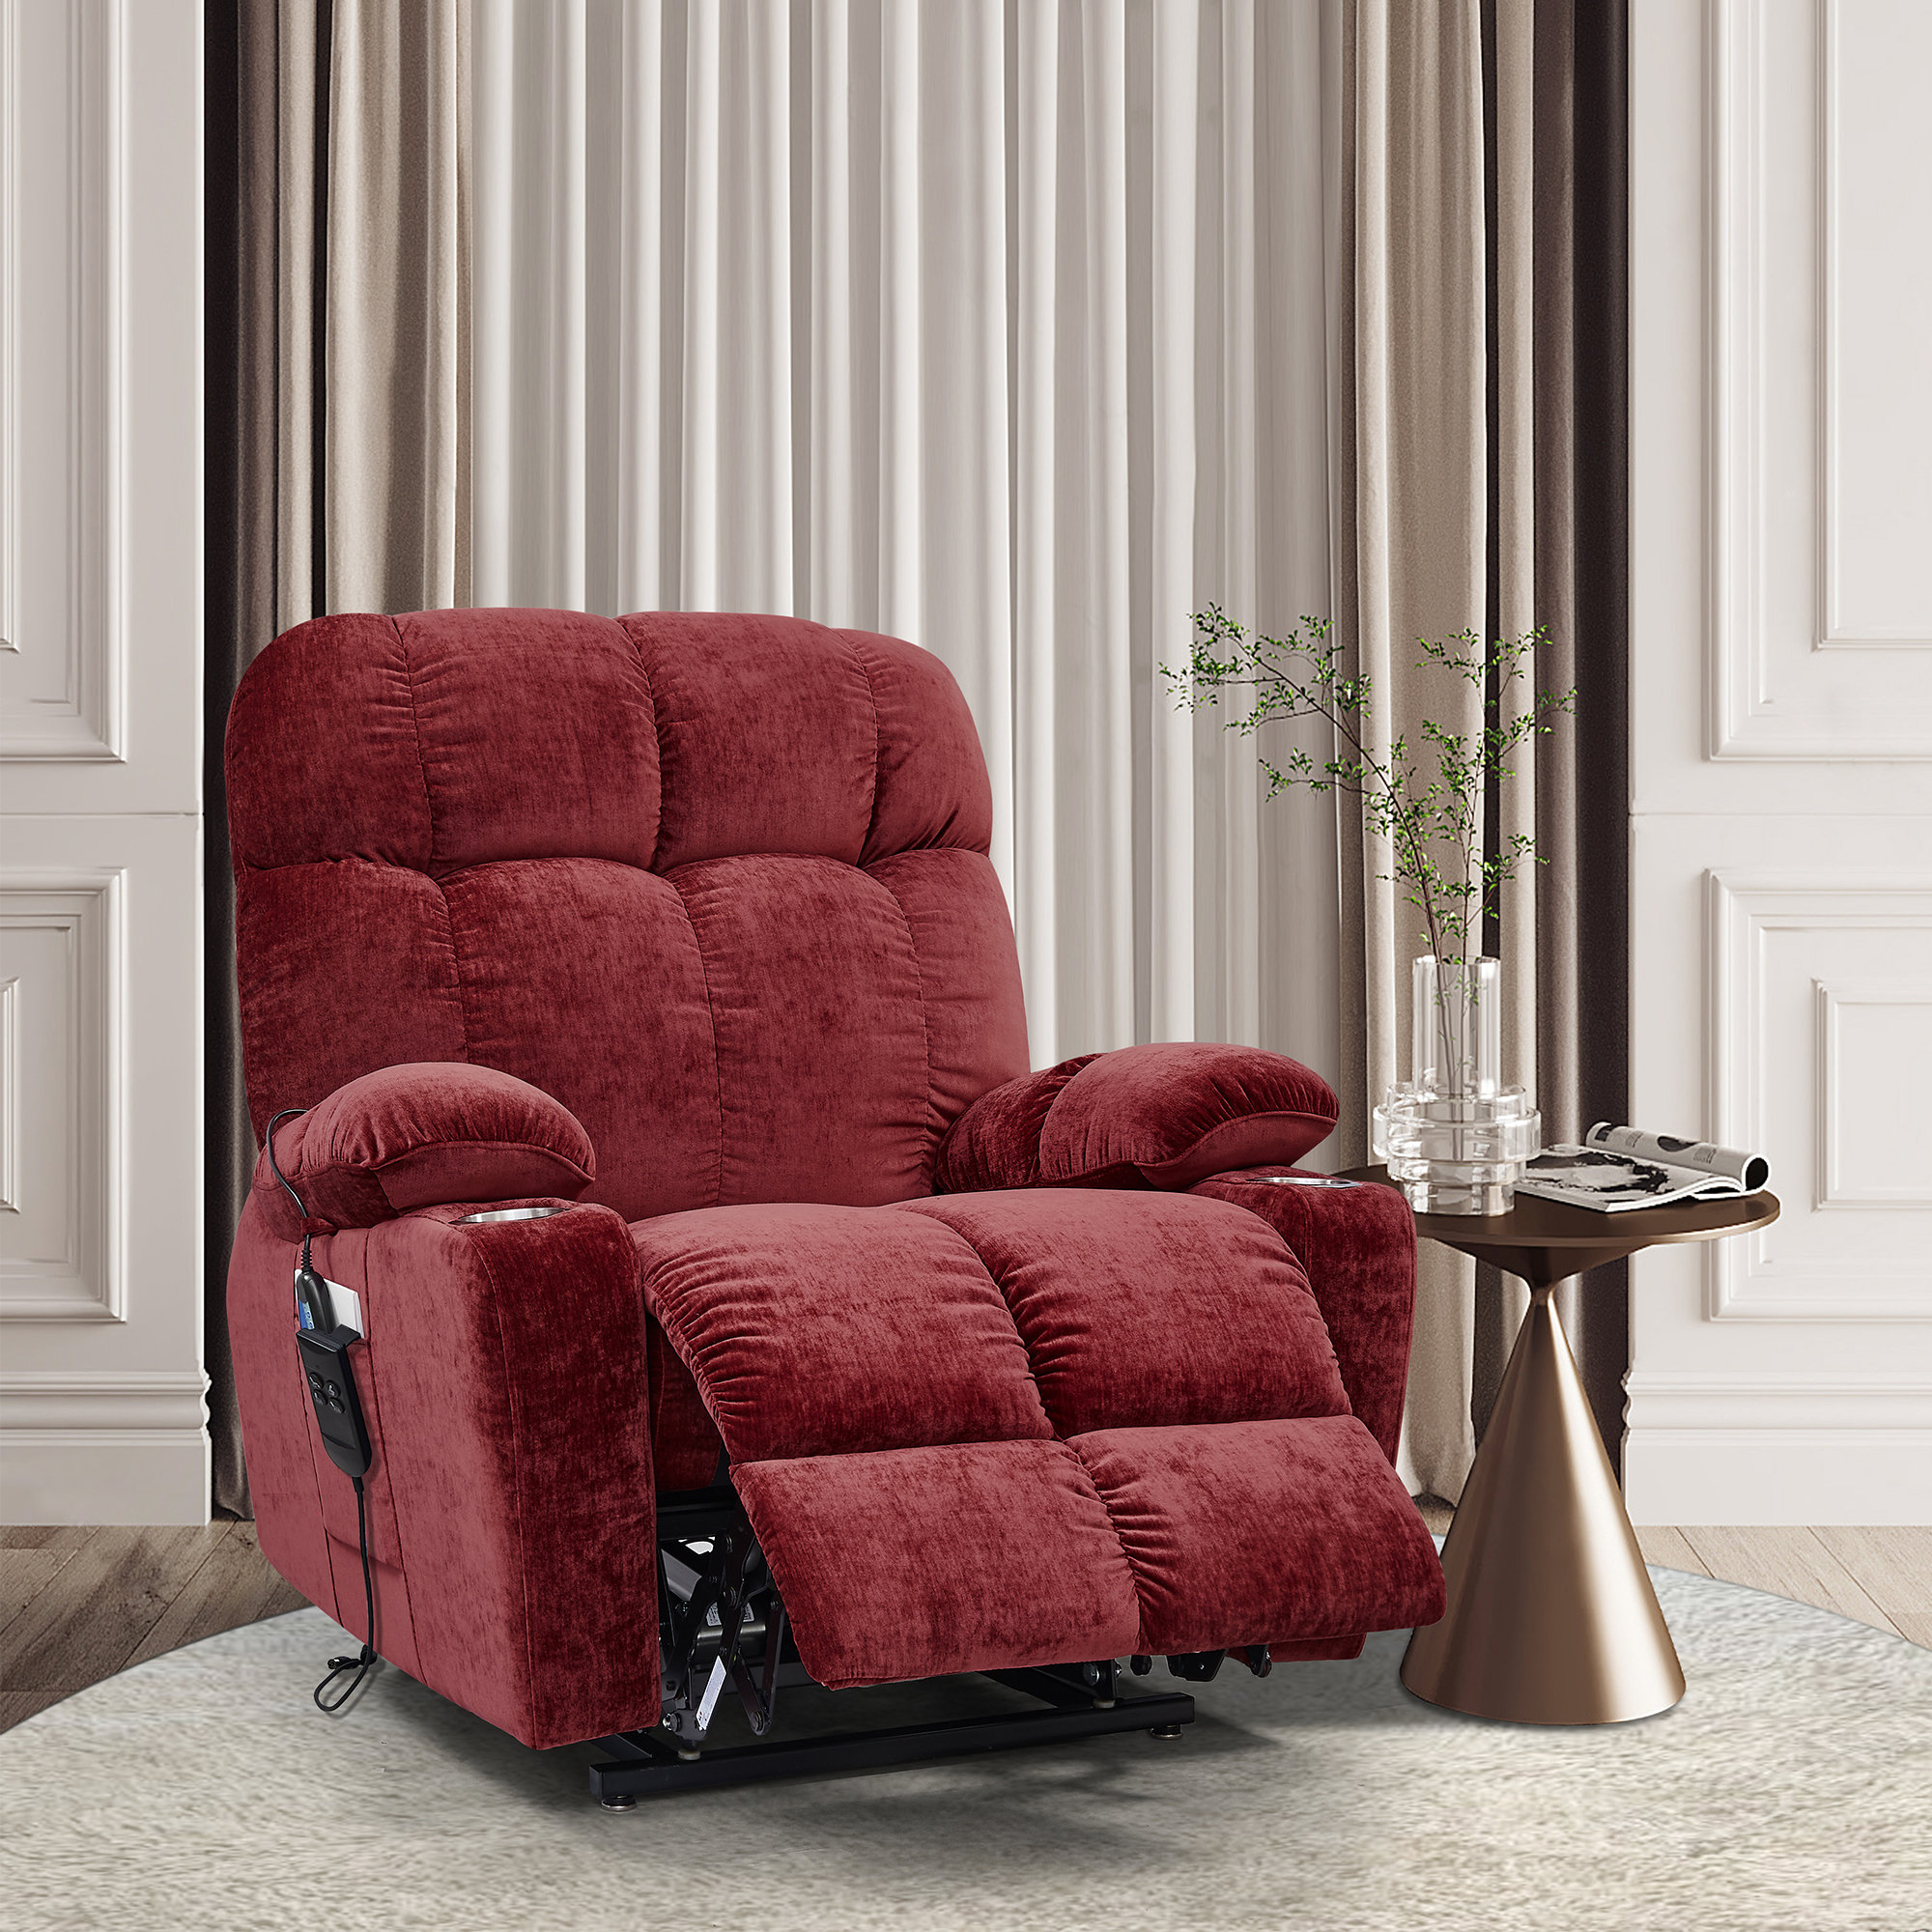 https://assets.wfcdn.com/im/03793749/compr-r85/2279/227944799/power-reclining-heated-massage-chair.jpg